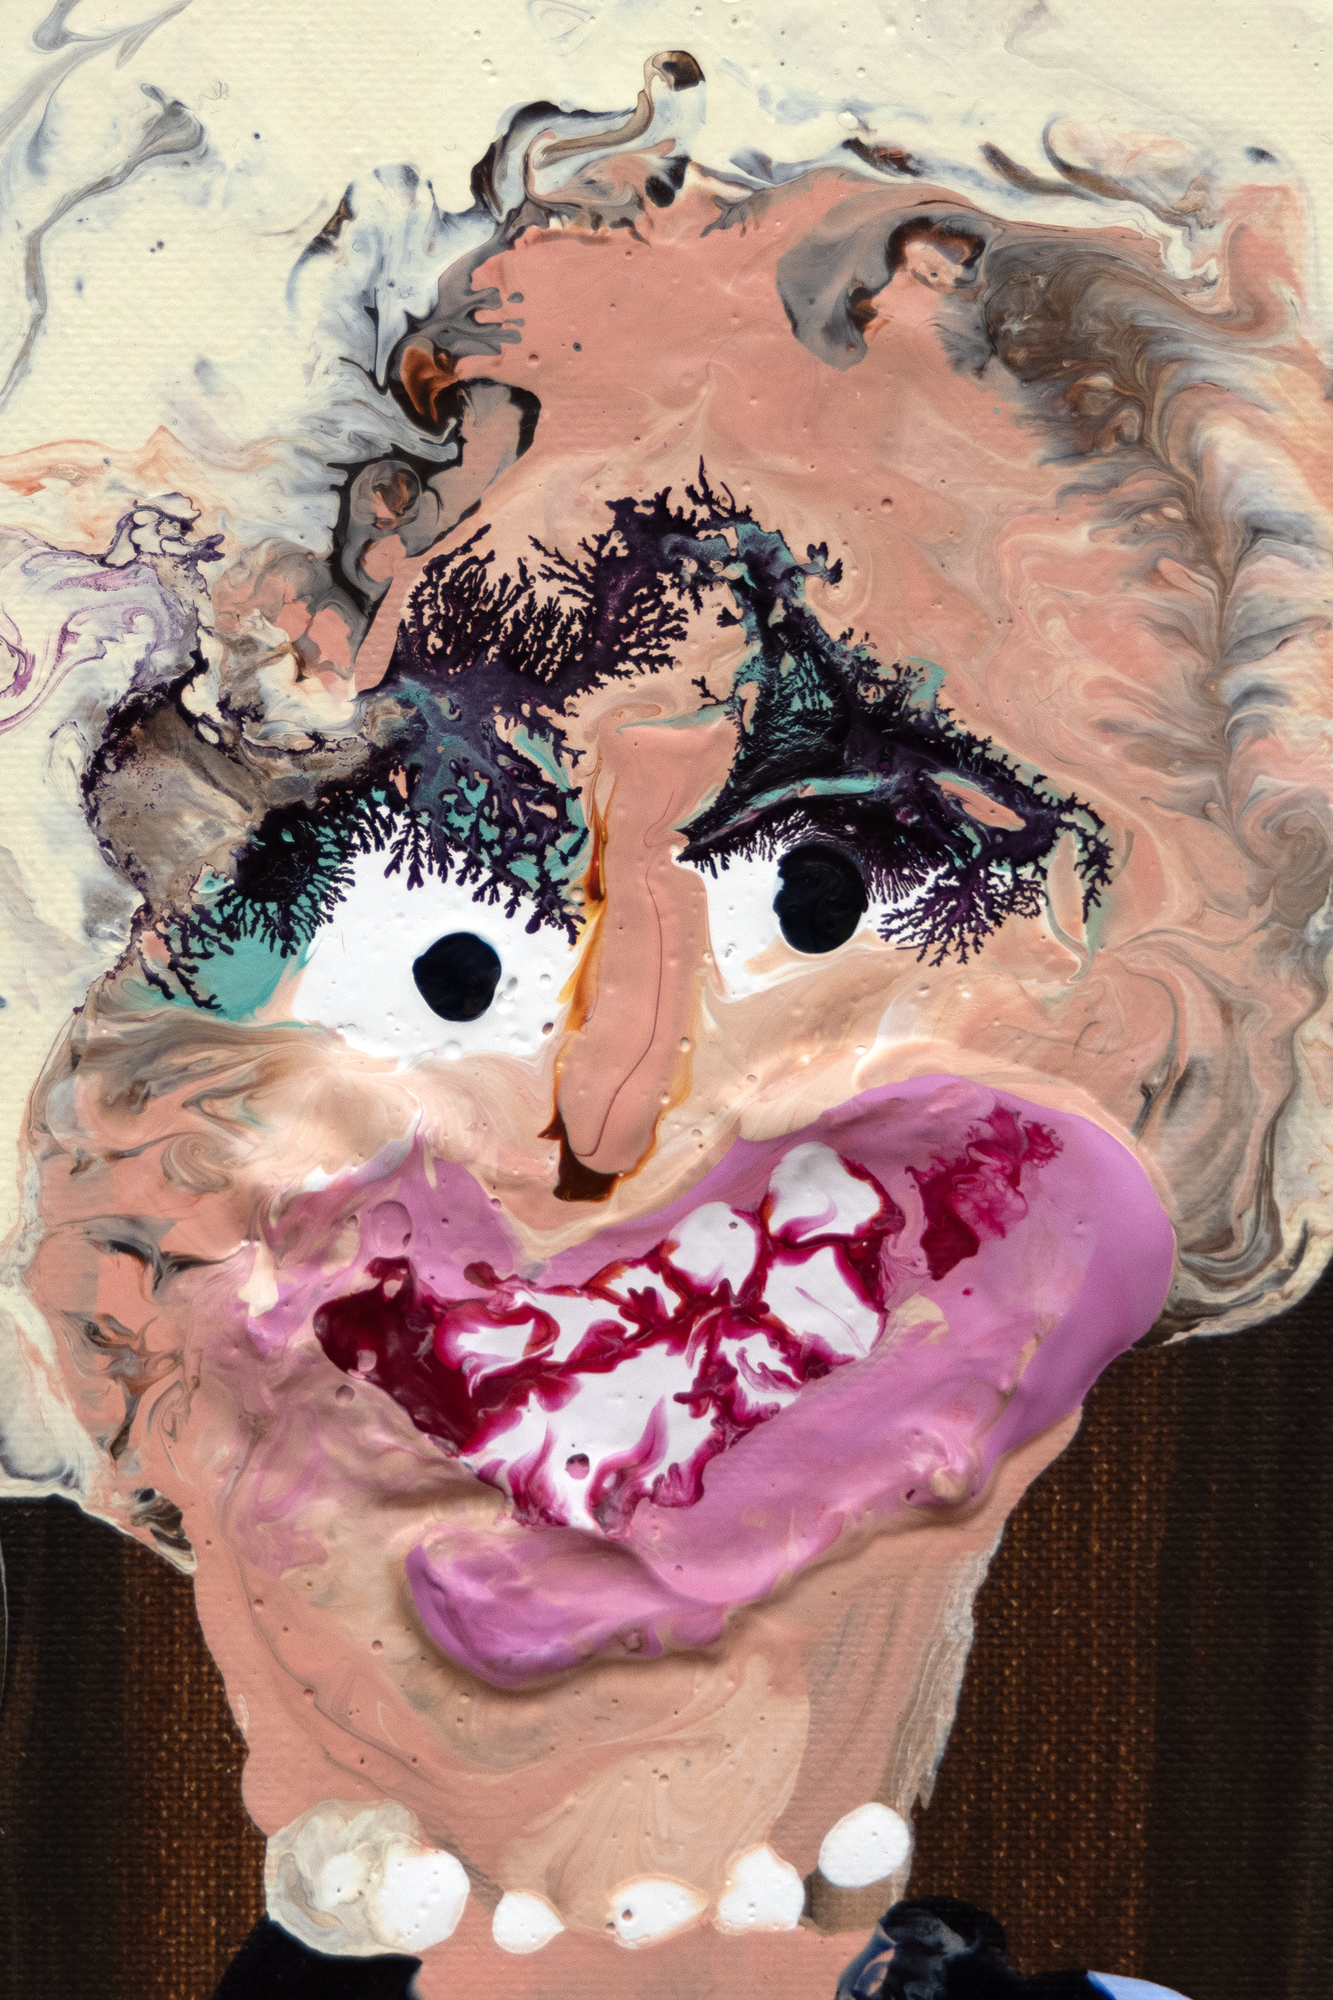 גנייב פיגיס היא דמות בולטת בסצנת האמנות האירית העכשווית, המוכרת בזכות הדיוקנאות הקבוצתיים החכמים והביקורתיים שלה, שלעתים קרובות לועגים למוסכמות חברתיות ותיקות. באיחור יחסי לציור, היא משכה את תשומת לבו של אמן הניכוס האמריקאי ריצ&#039;רד פרינס בטוויטר, שרכש את אחת מעבודותיה והכיר לה את המעגלים המשפיעים של קהילת האמנות הניו יורקית. עבודתו של פיגיס מבקרת באופן משעשע את הרגלי הצריכה האמידים של מעמד הביניים ואת אורח החיים המפואר, כפי שהונצחו על ידי אמני העבר, ומביאה נושאים אלה היטב אל ההווה עם תערובת של סאטירה ותיאורים גולמיים ואותנטיים של החיים. חשבו על פיגיס כמי שחצה את חולות הזמן אל דומייר או הוגארת&#039;, שעבודתם הציעה לעתים קרובות מבט סאטירי על החברה העכשווית, והצטרפה לאמנים העוסקים בסאטירה חברתית וידועים בכישורי ההתבוננות החדים שלהם.